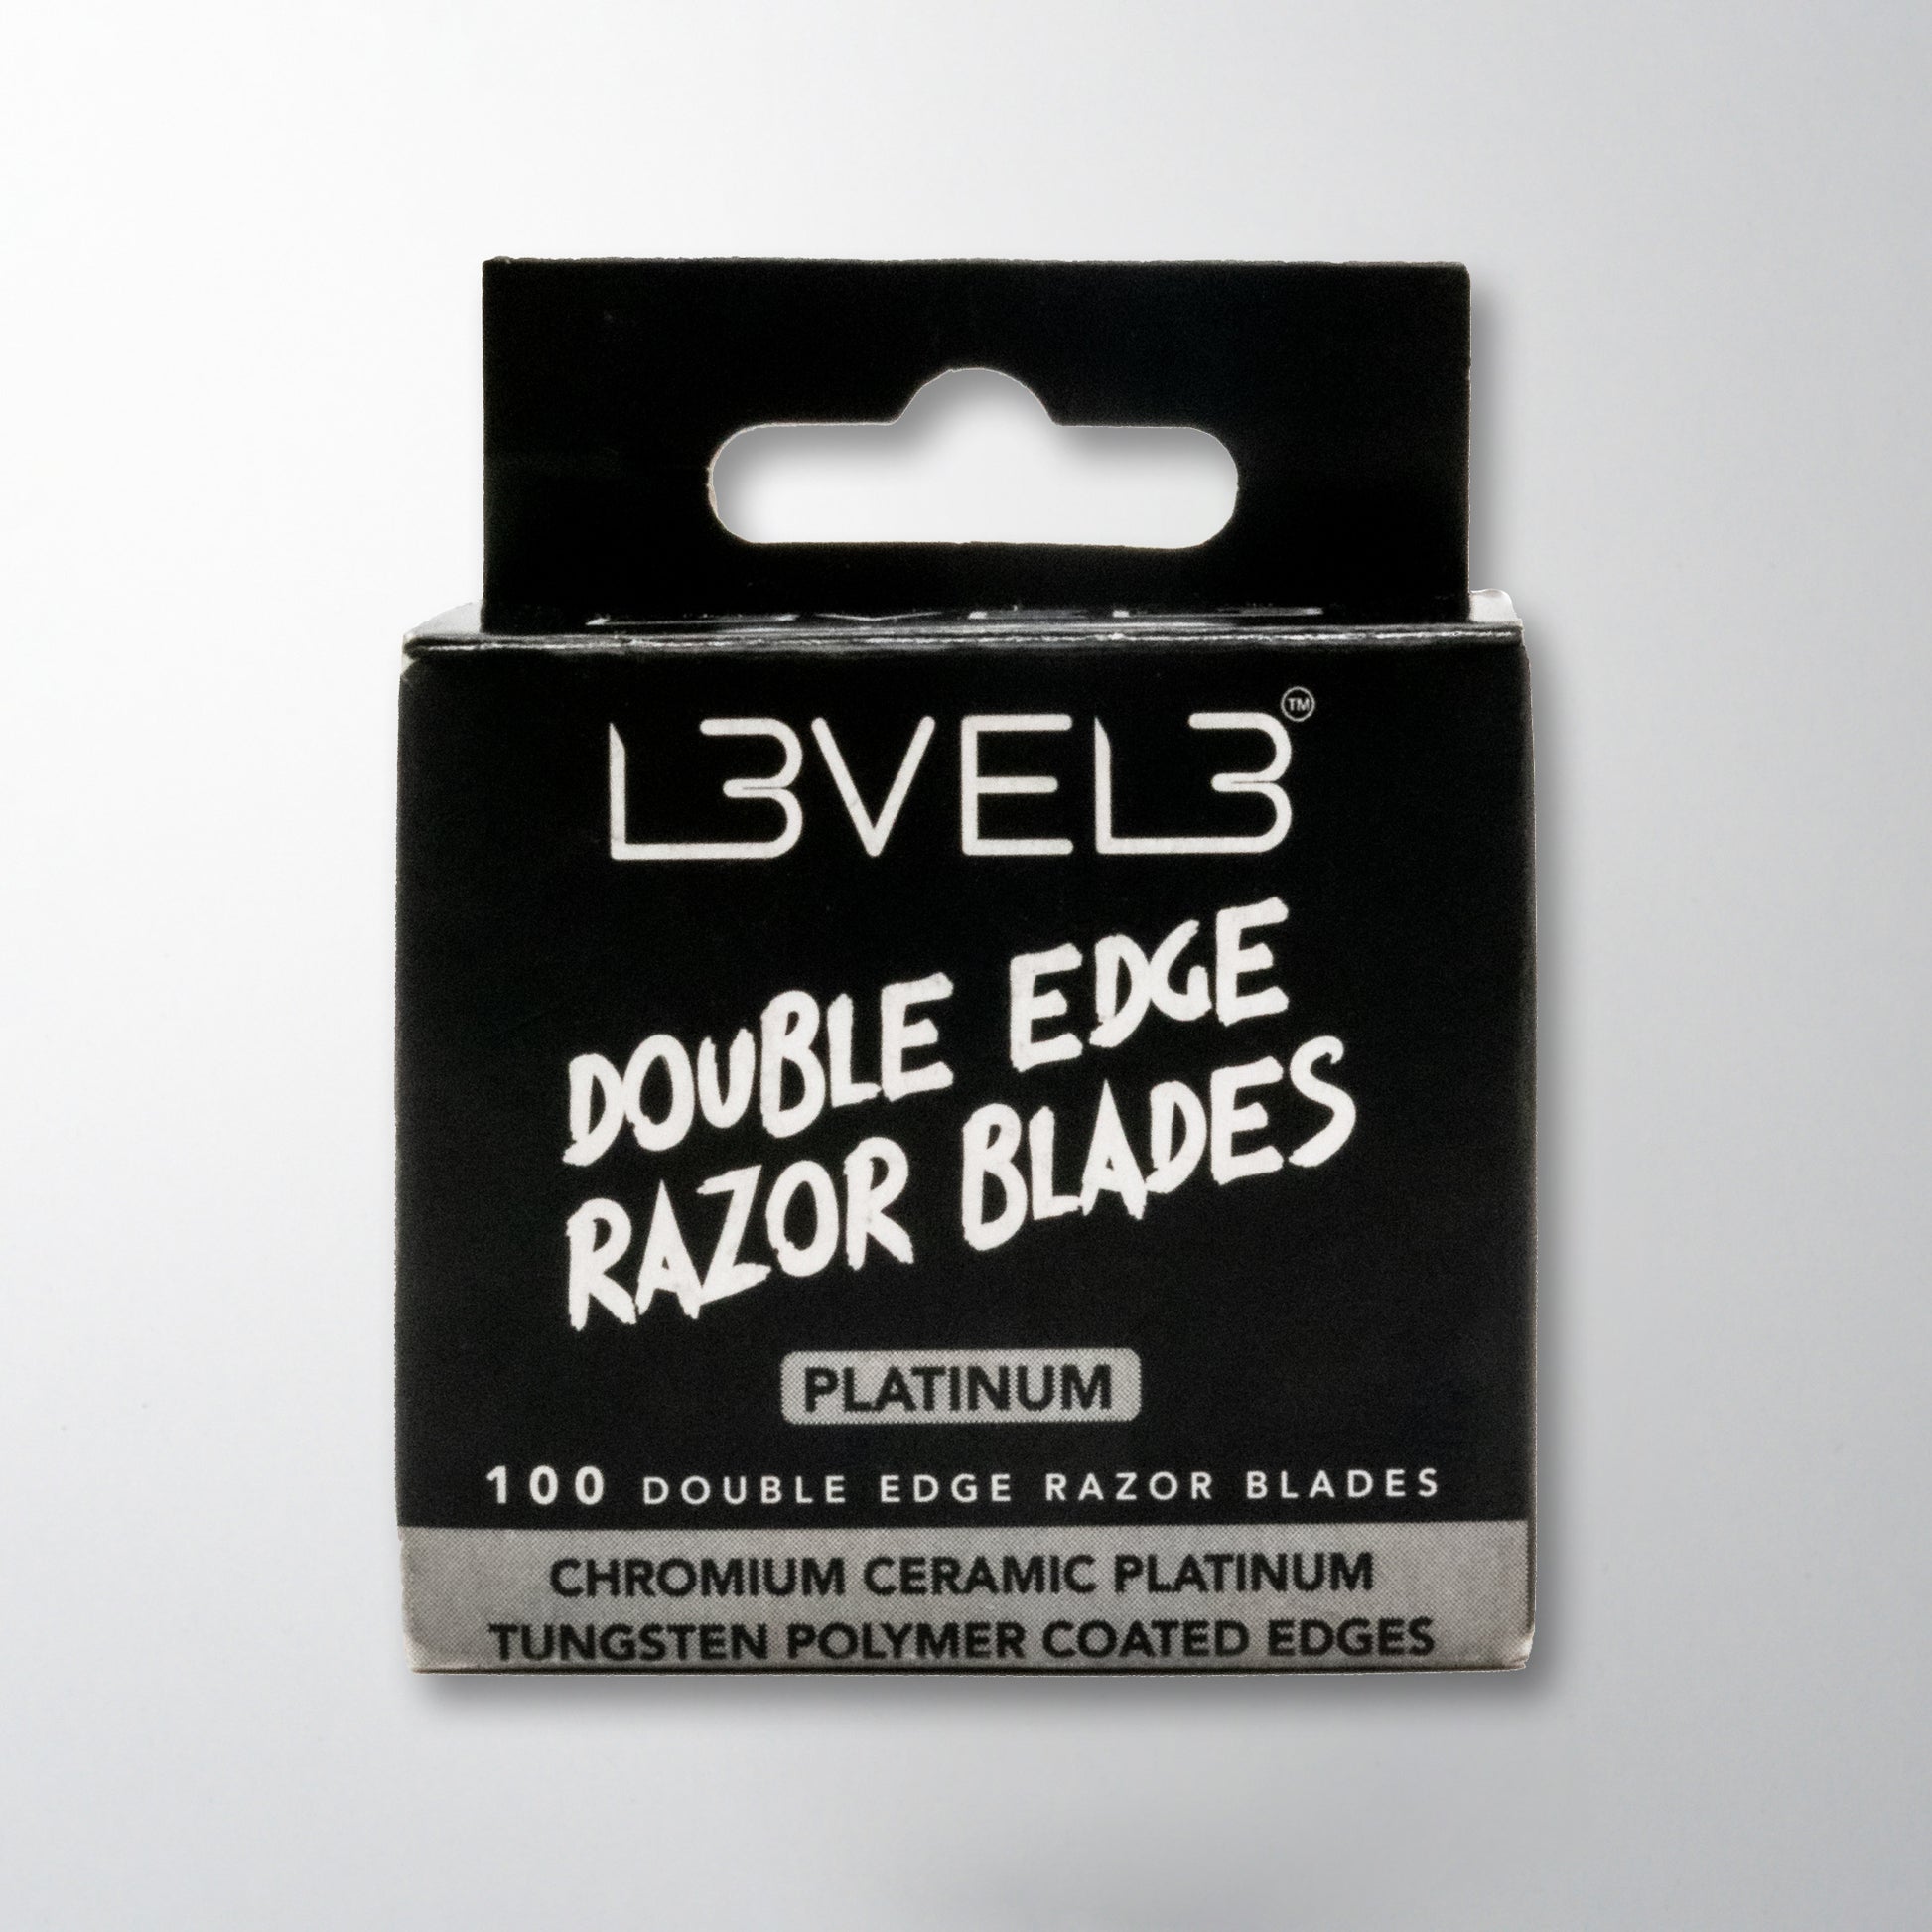 Level 3 Double Edge Razor Blades